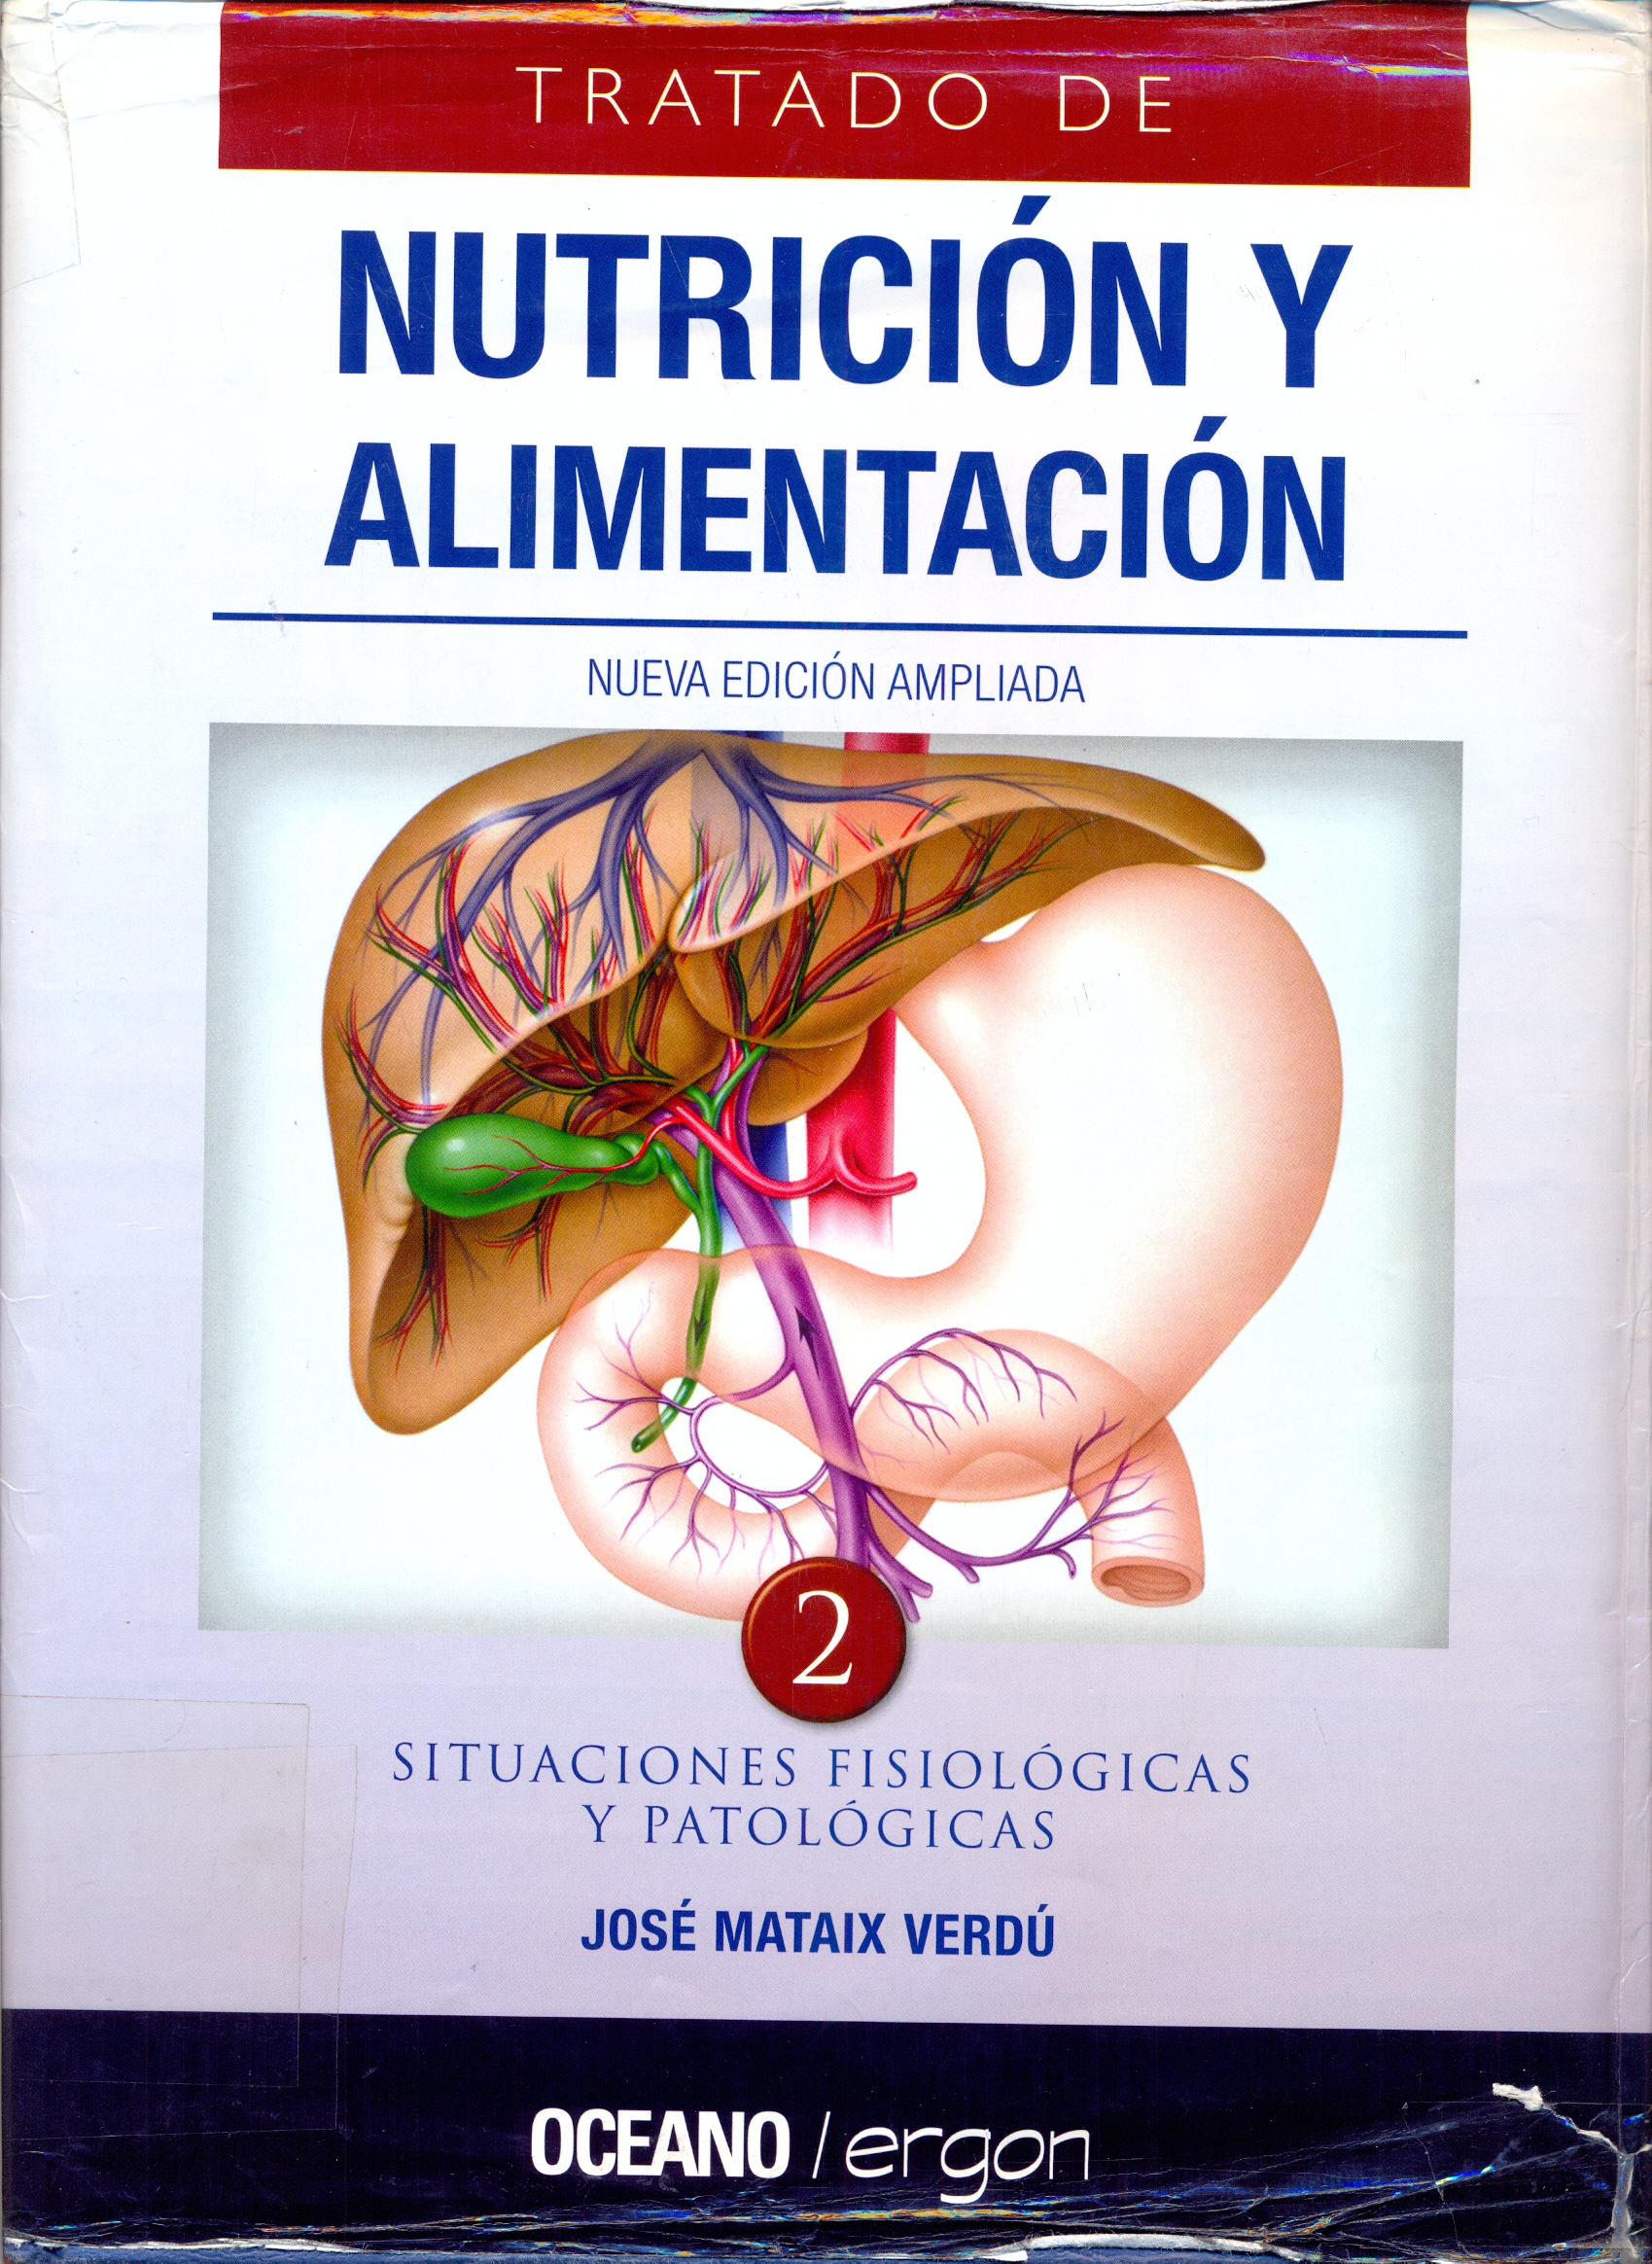 Imagen de portada del libro Tratado de nutrición y alimentación